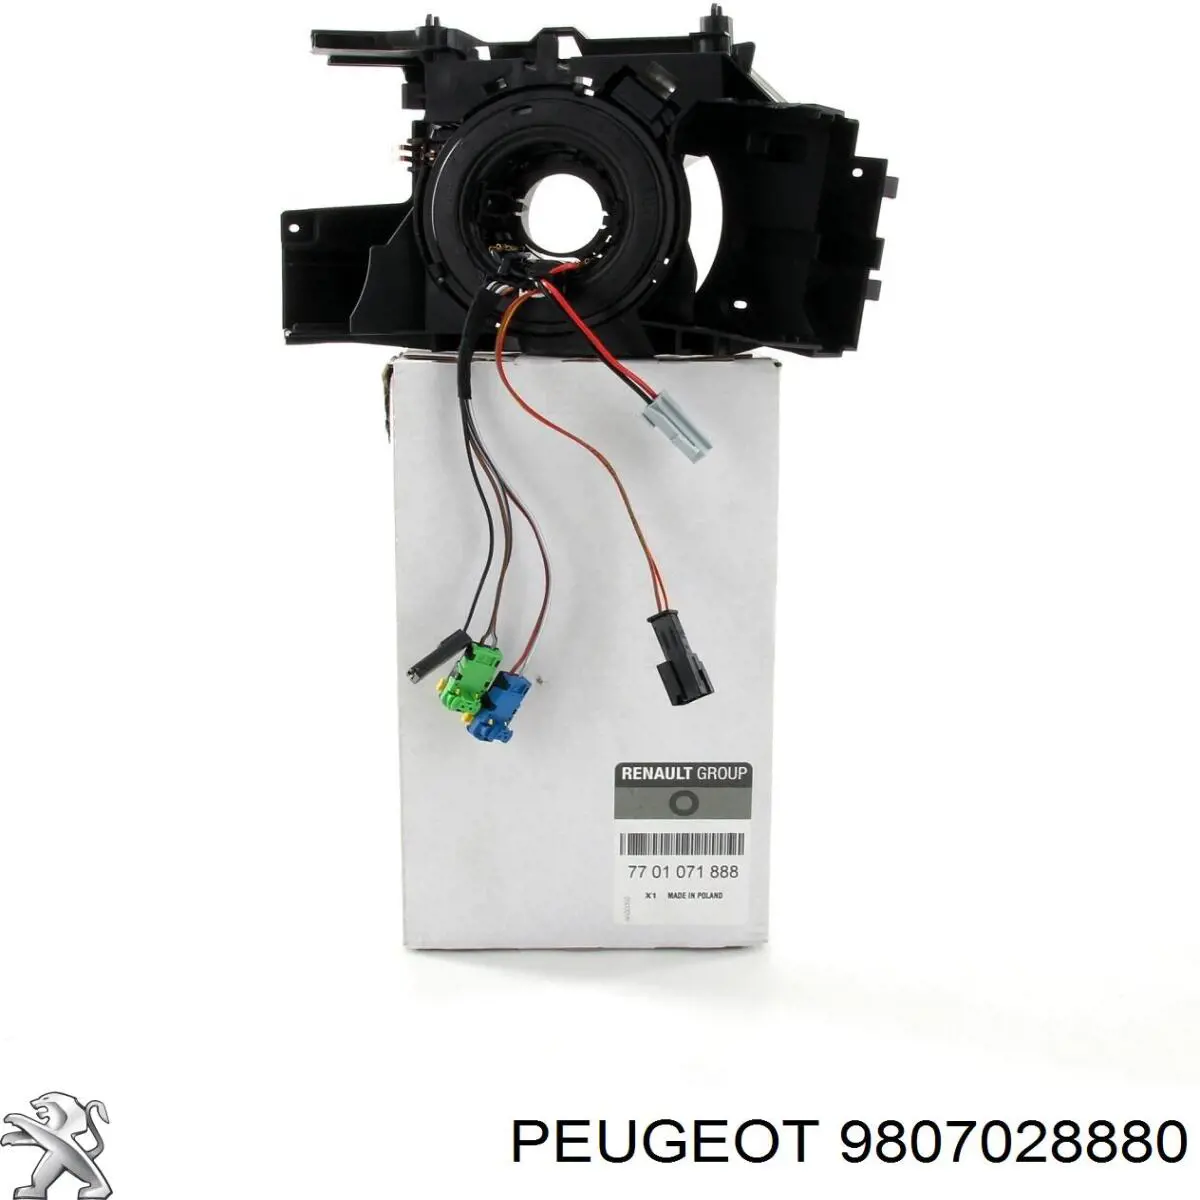 9807028880 Peugeot/Citroen caja de fusibles